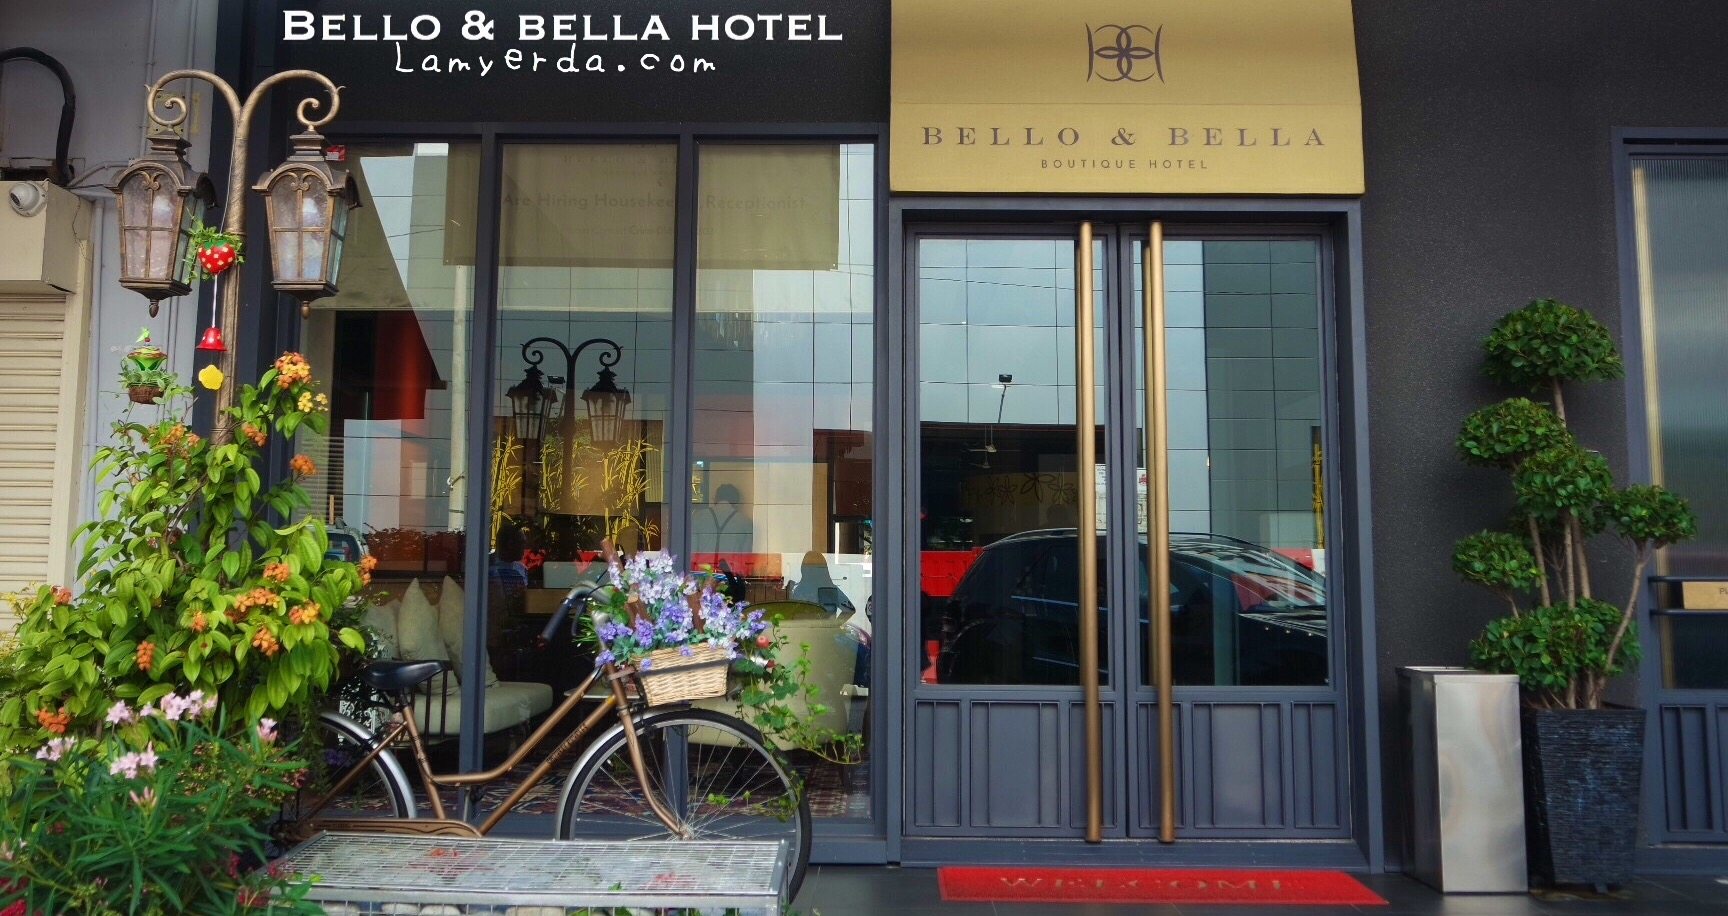 Bello & Bella Boutique Hotel:  A brand new hotel in Cheras you will love